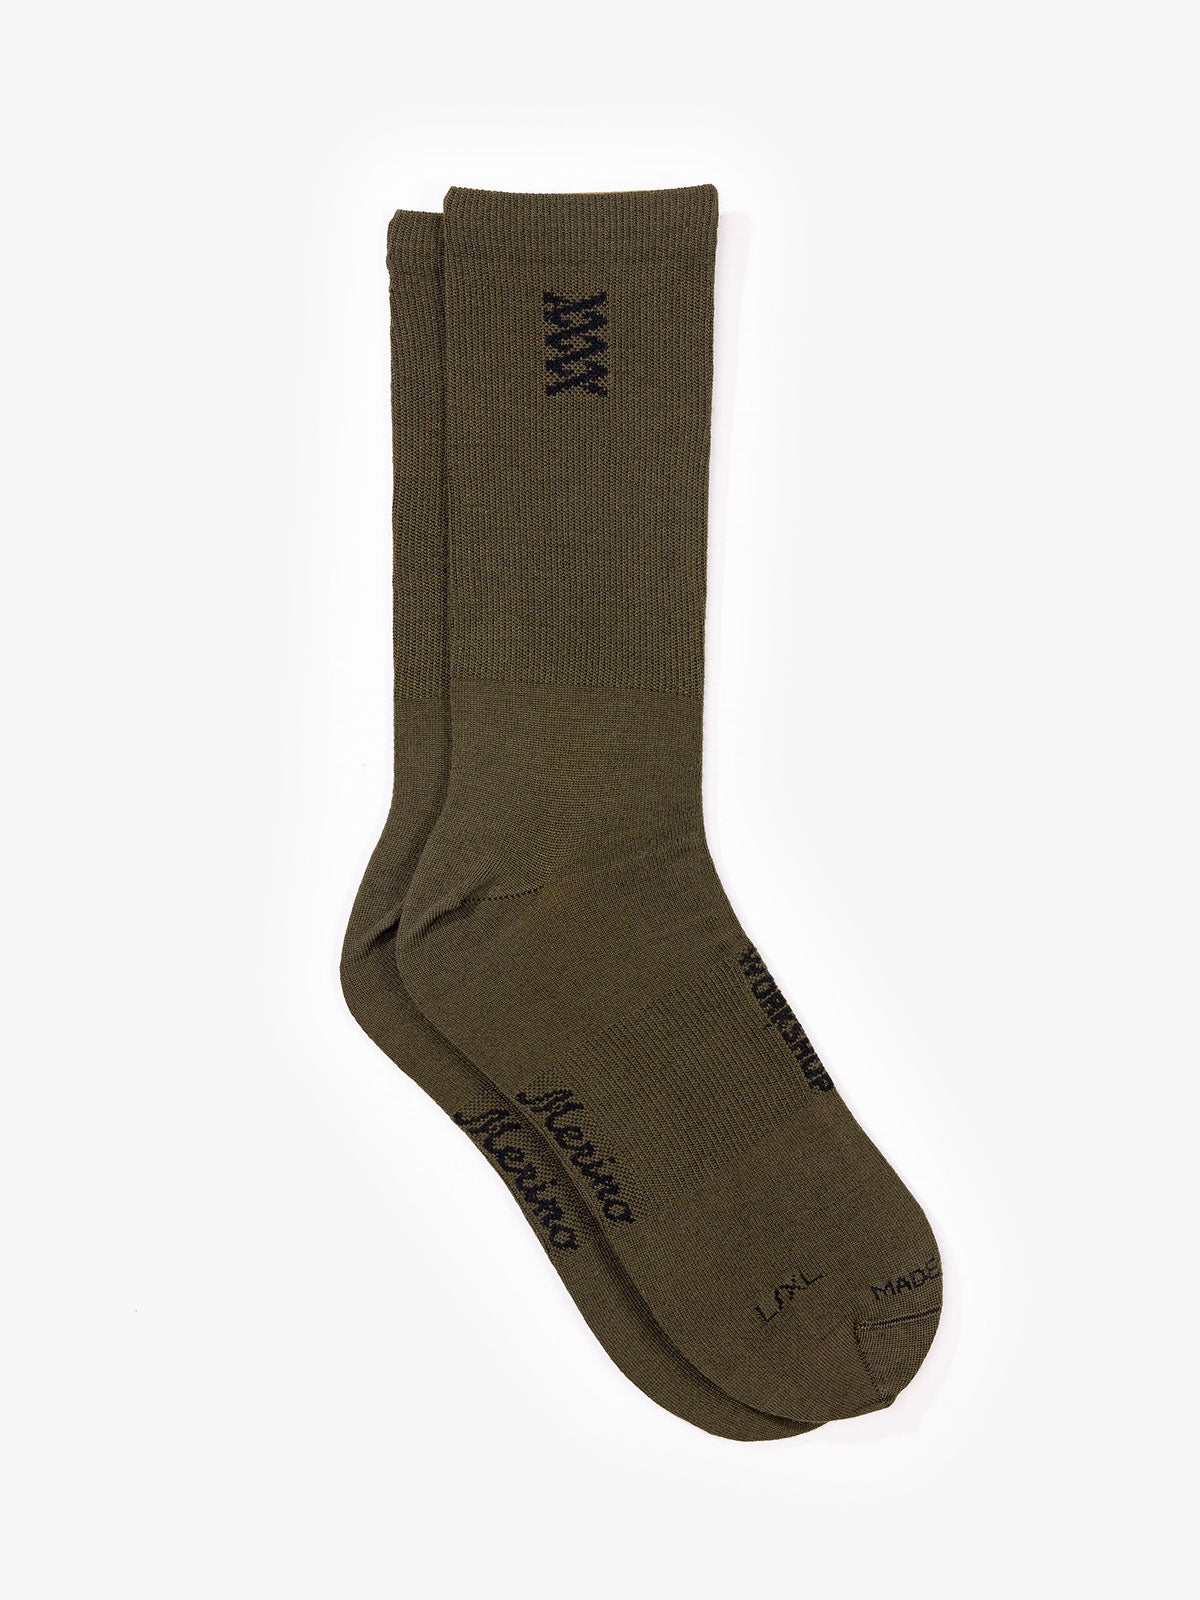 Mission Pro Wool Socks by Mission Workshop - Weerbestendige tassen & technische kleding - San Francisco & Los Angeles - Gemaakt om te doorstaan - Voor altijd gegarandeerd